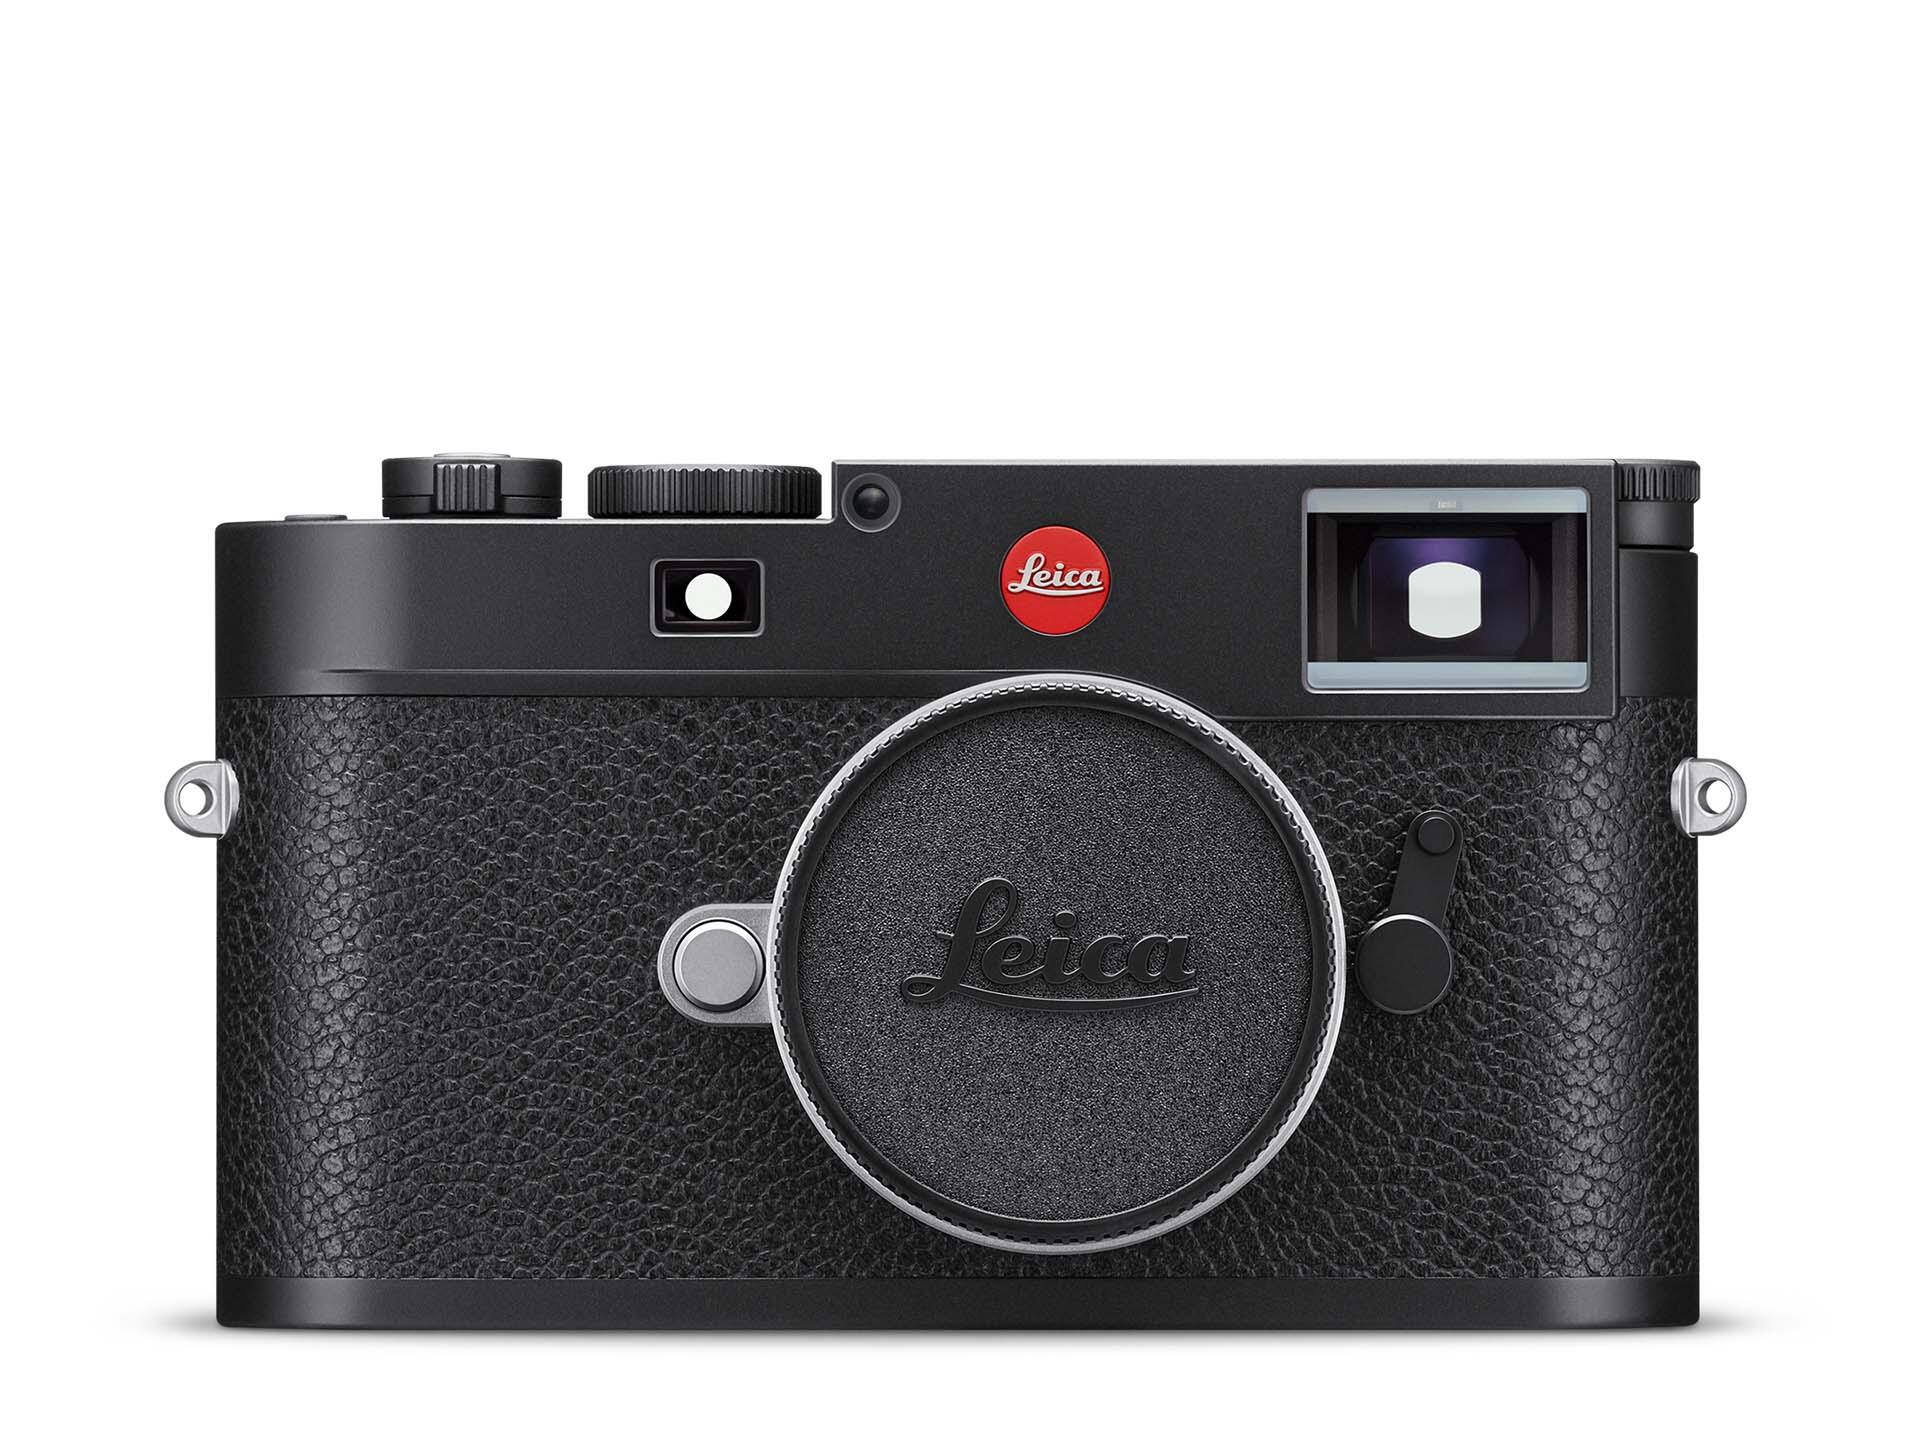 ライカM11 | Leica Camera JP